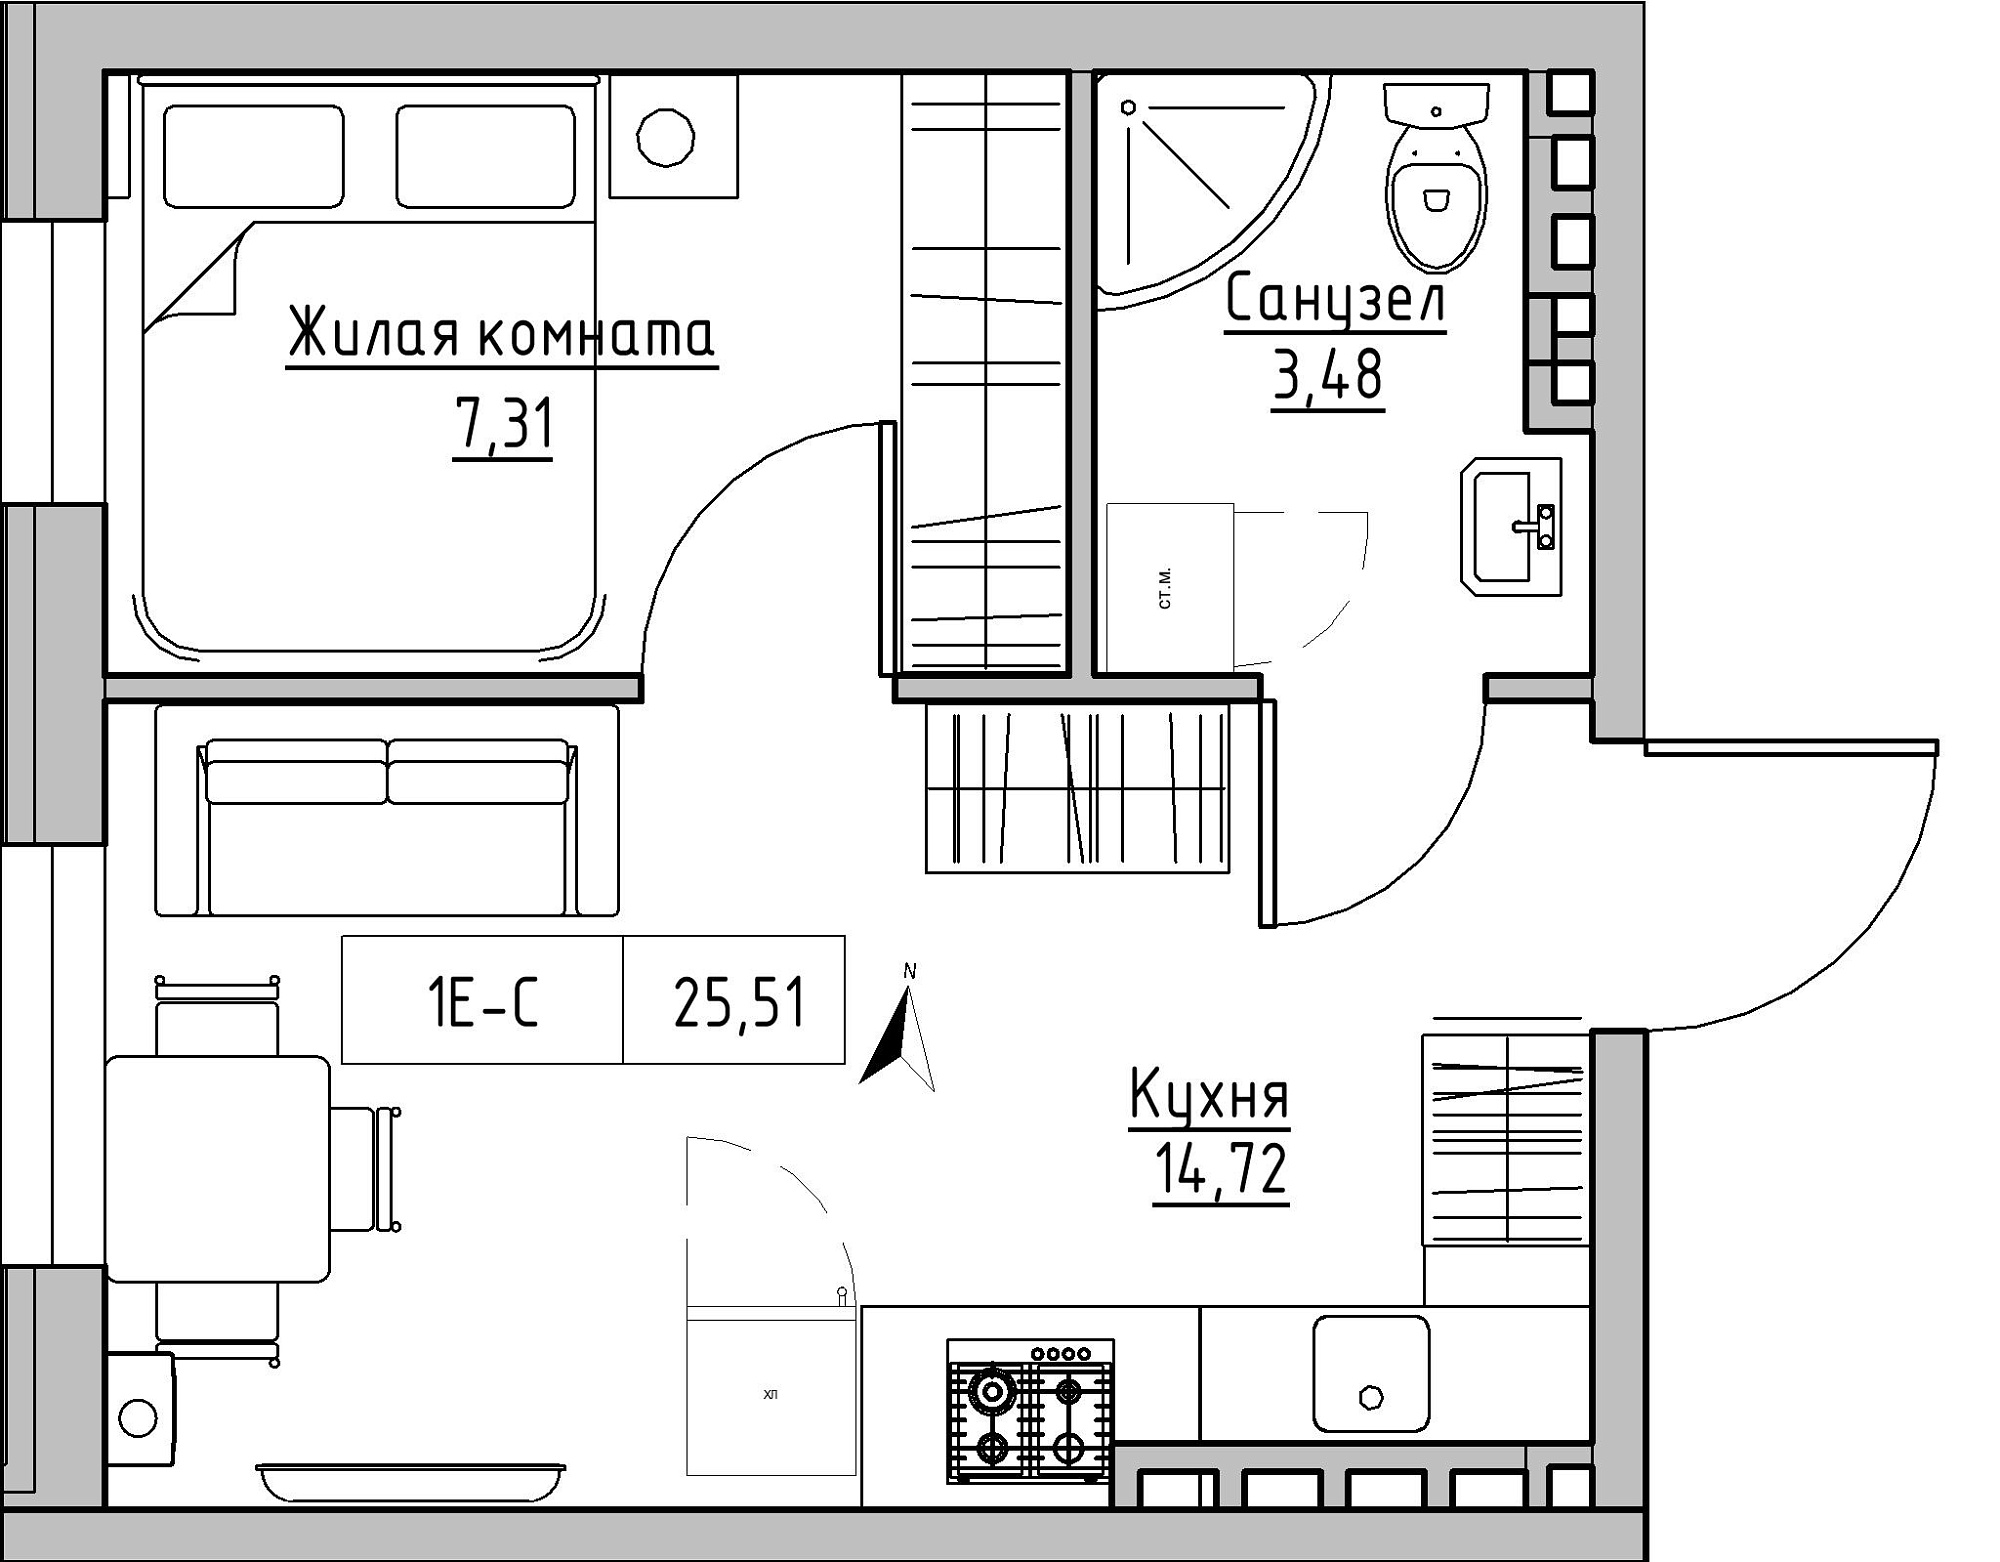 Планування 1-к квартира площею 25.51м2, KS-024-05/0015.